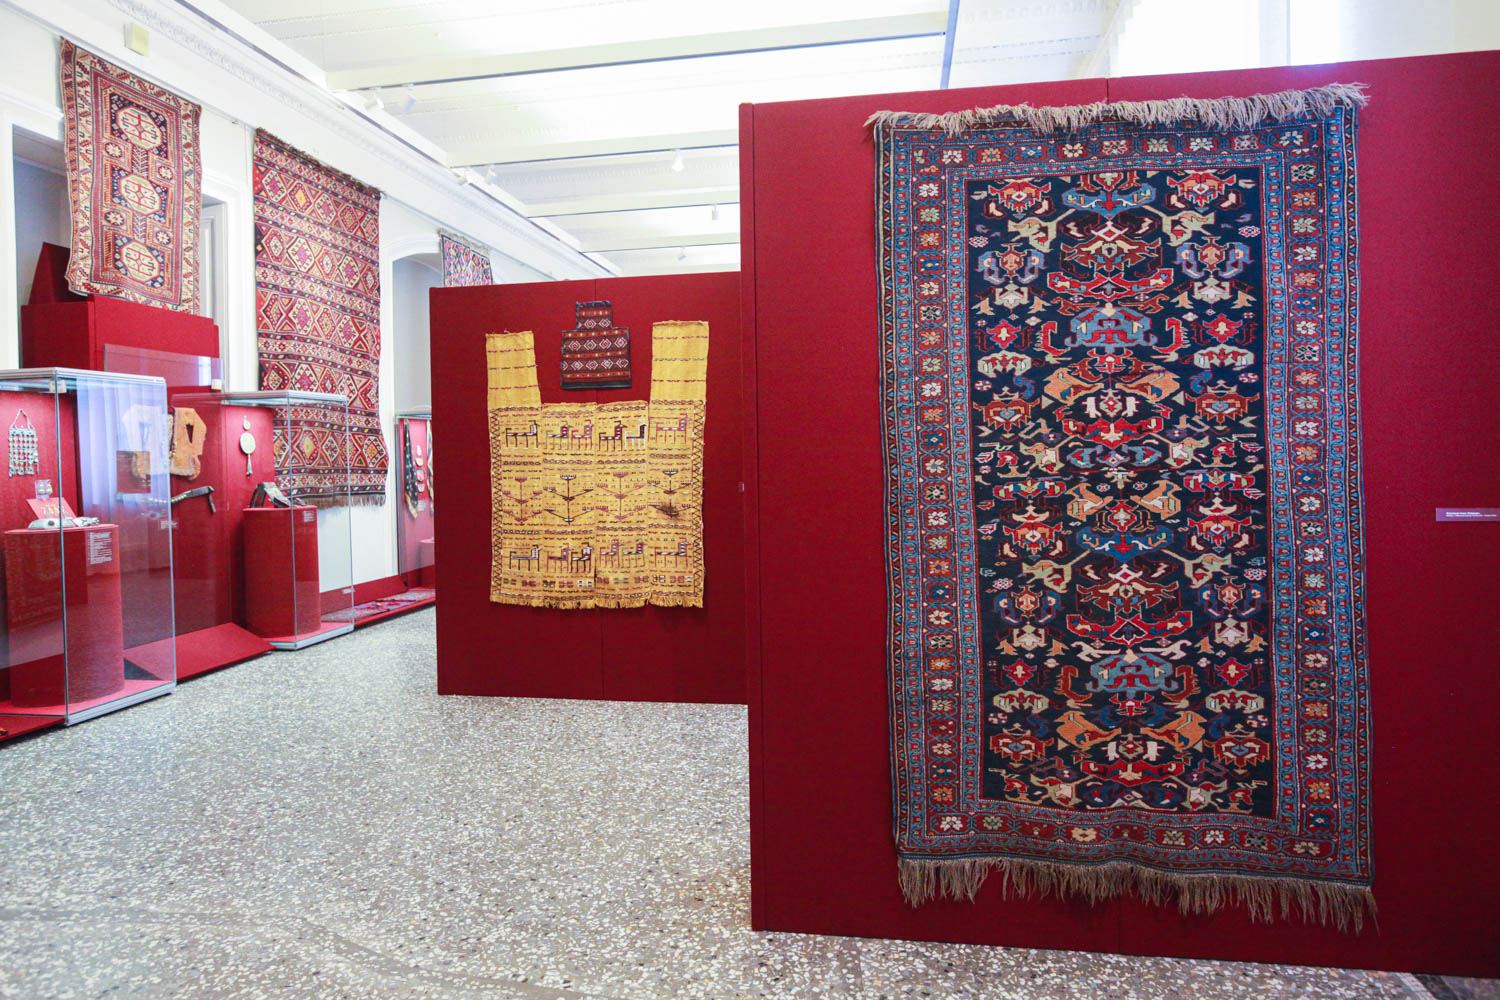 Вплетая нить судьбы... Азербайджанские ковры очаровывают Россию – интервью (ФОТО)